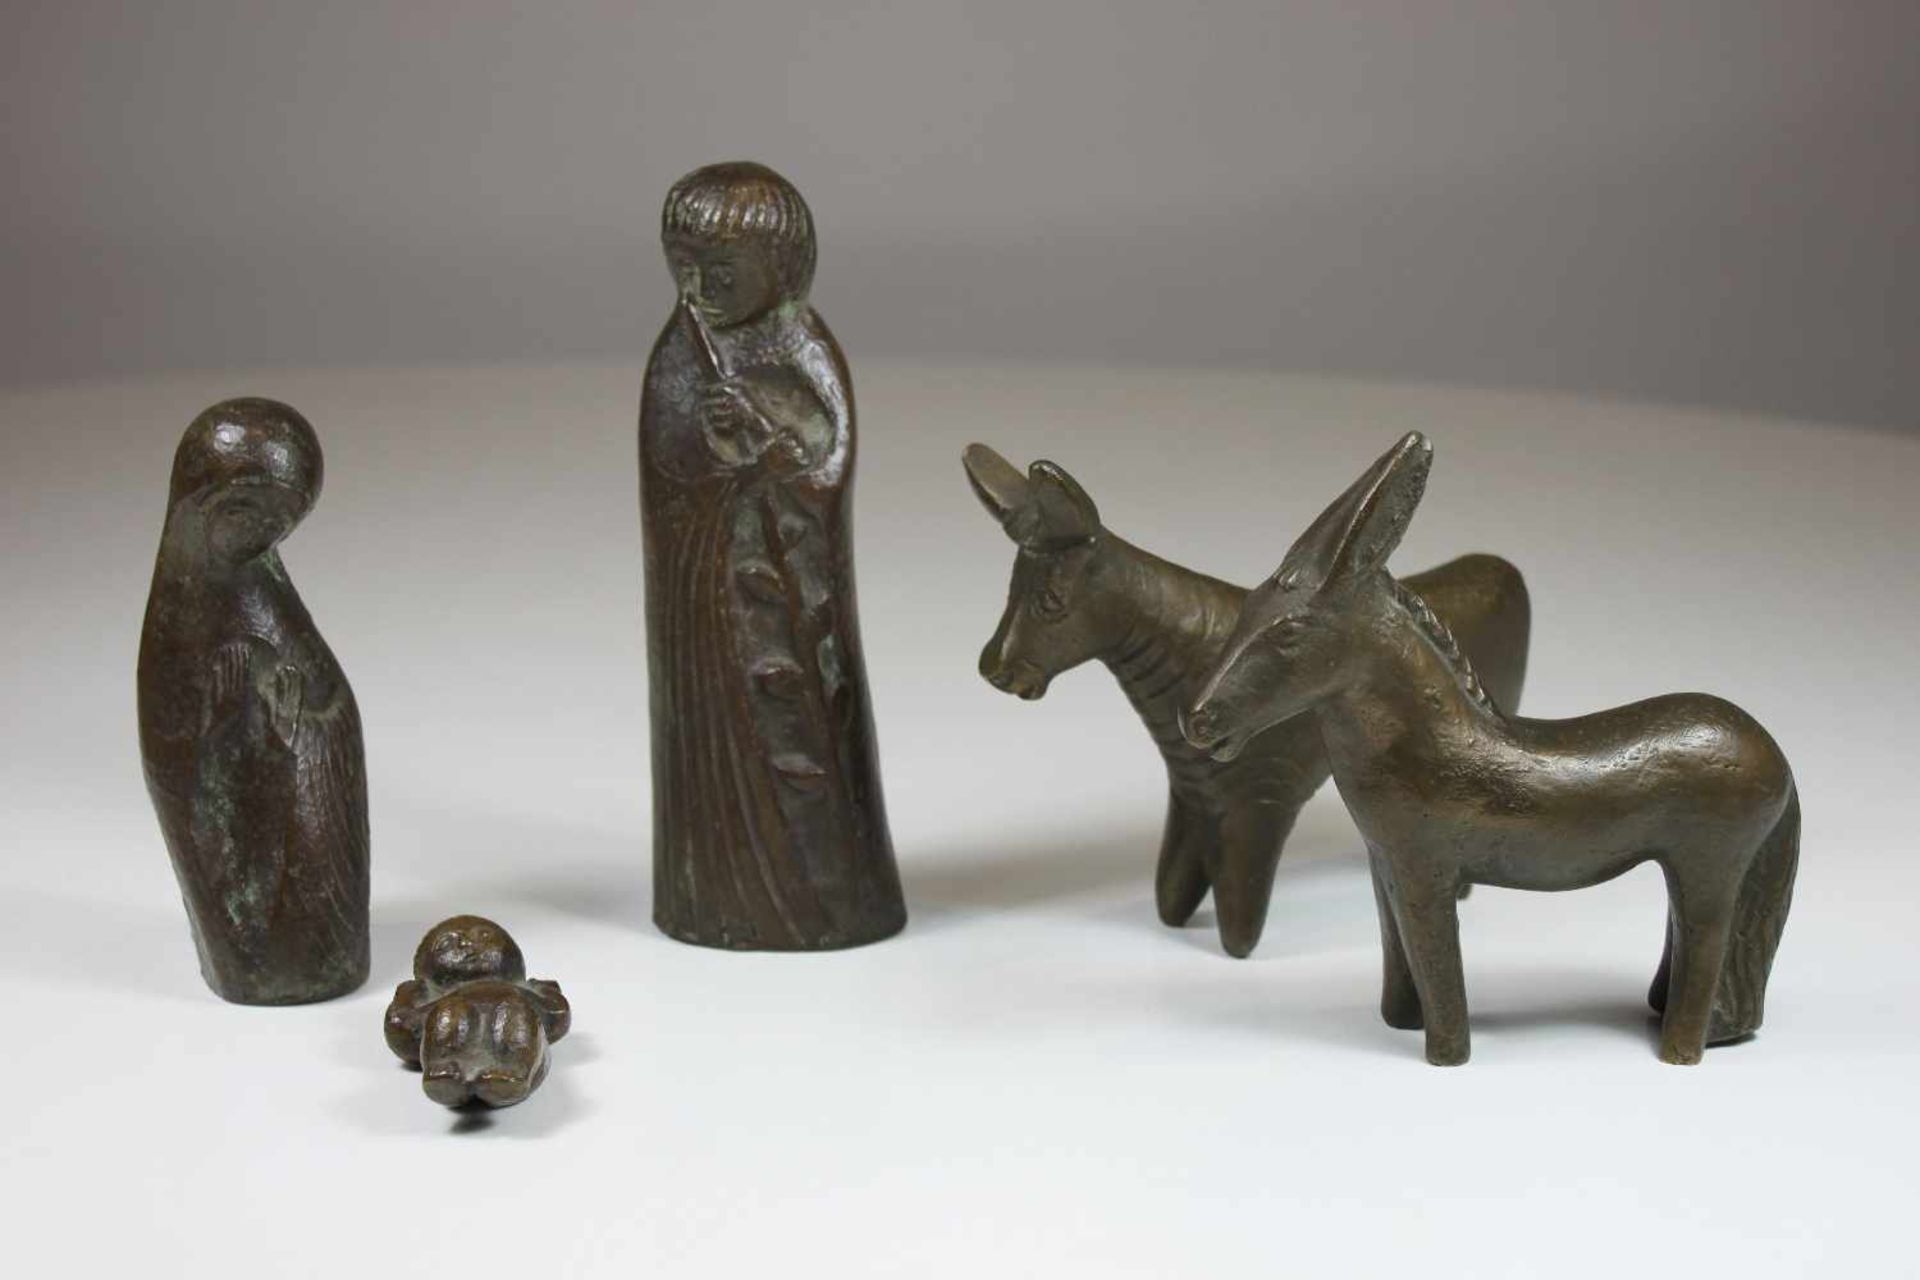 5 Krippenfiguren, 20 Jh., patinierte Bronze, die größte Figur H.: 17,5 cm.